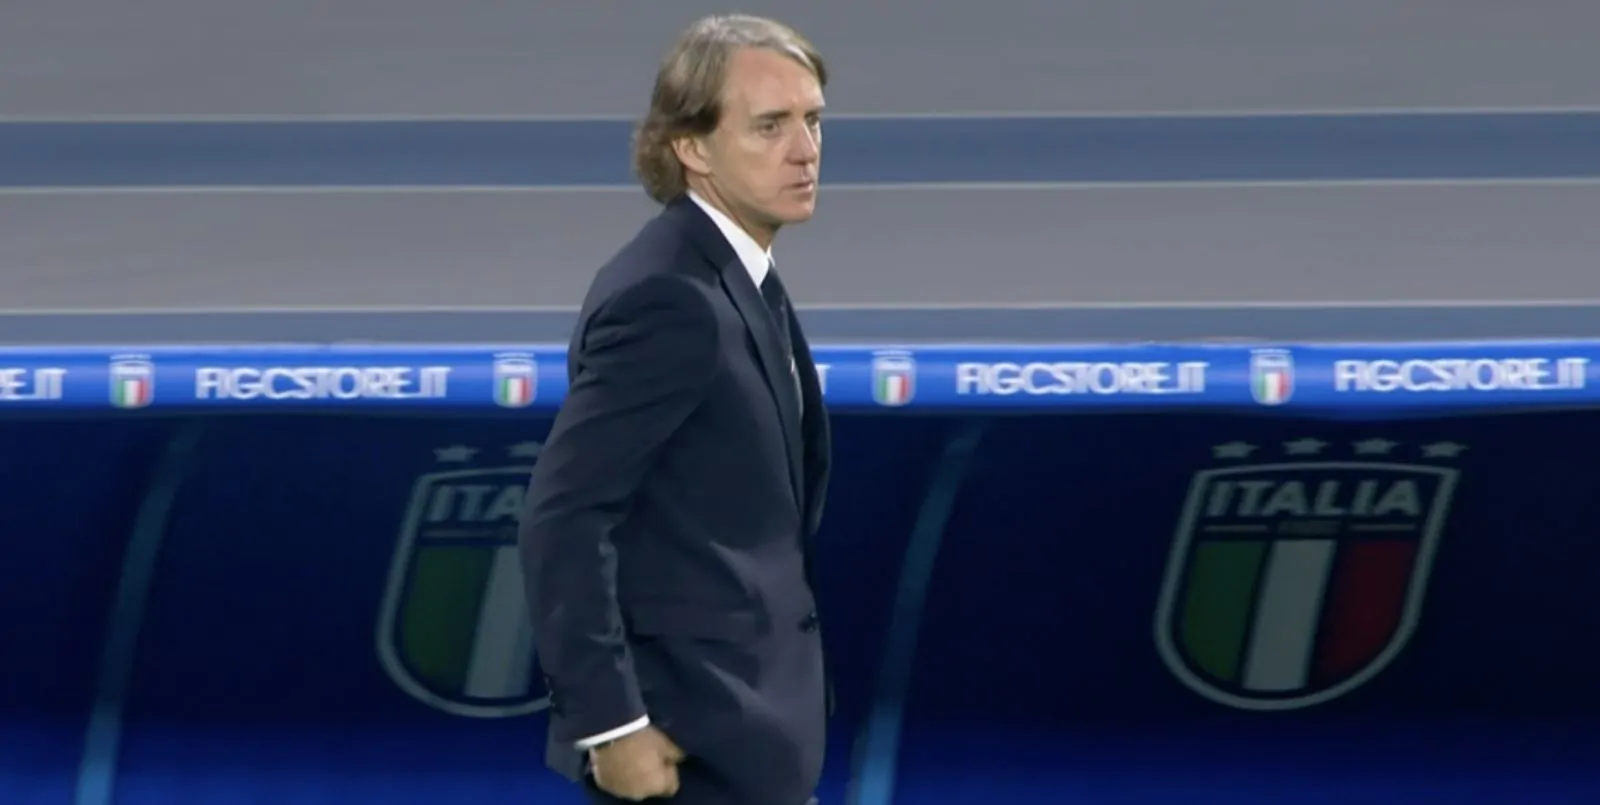 Italia-Inghilterra, Mancini deluso: “Abbiamo preso gol evitabili, strada in salita”